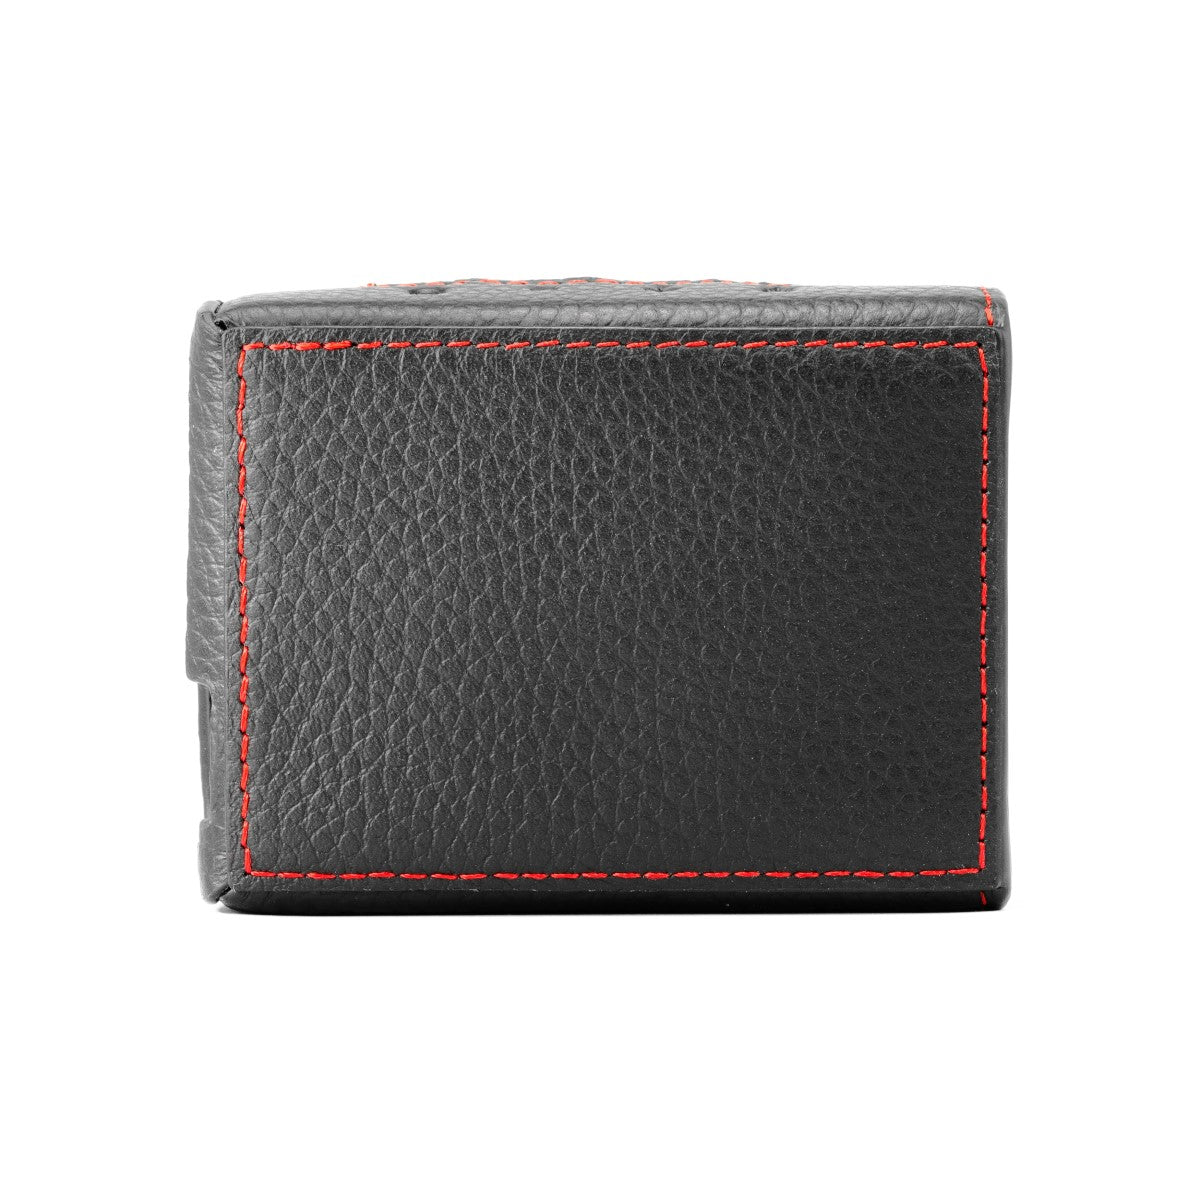 Chord Mojo 2 Original Premium Leather Case